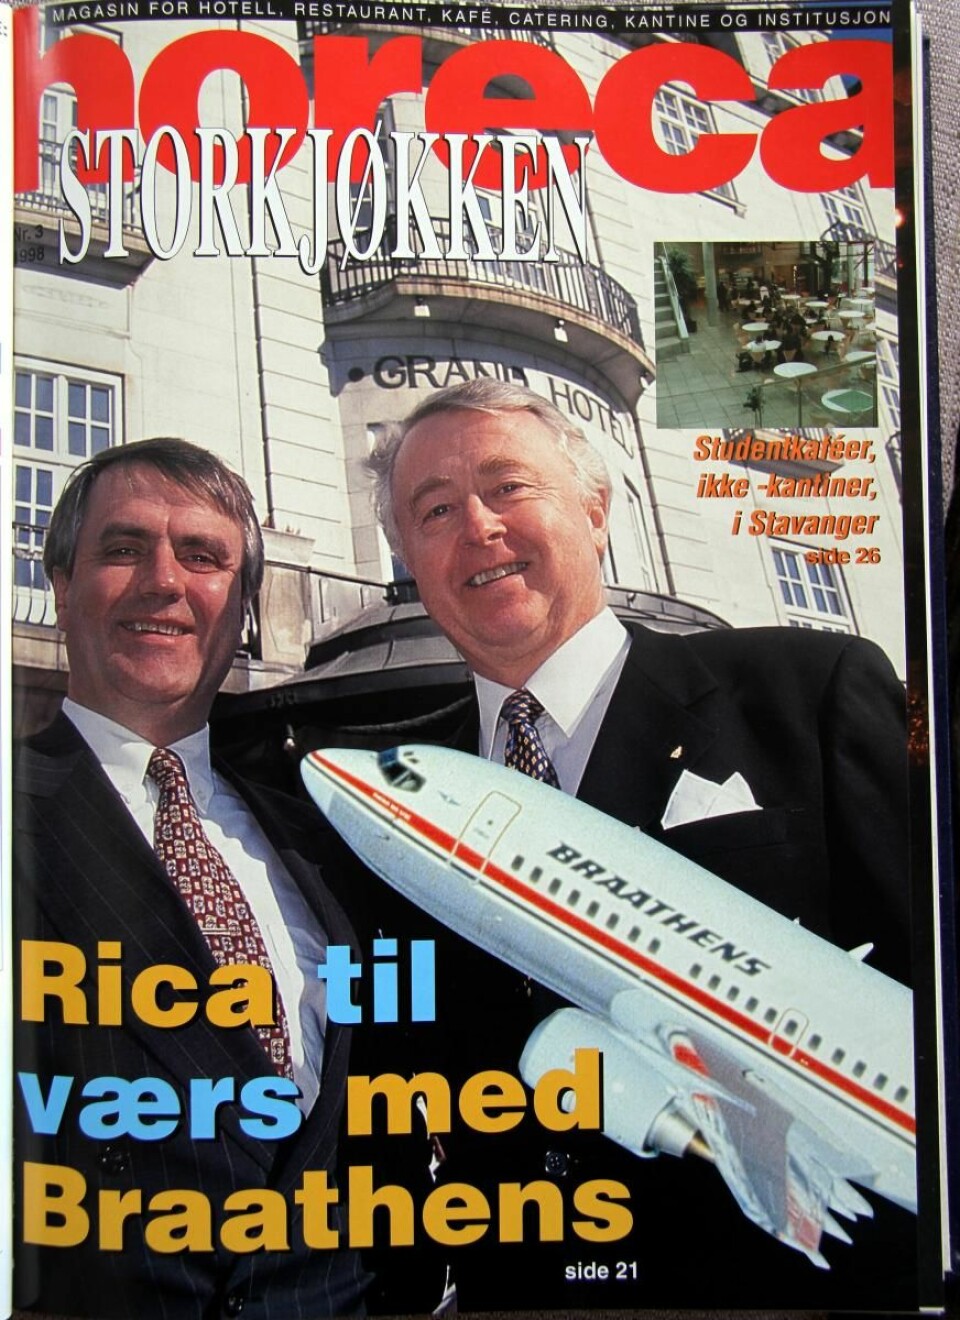 Forsiden av Horeca Storkjøkken, nummer 31998. Jan E Rivelsrud sammen med tidligere konsernsjef Ole-Jacob Wold, som har skrevet dette minneordet sammen med Gisle Evensen.